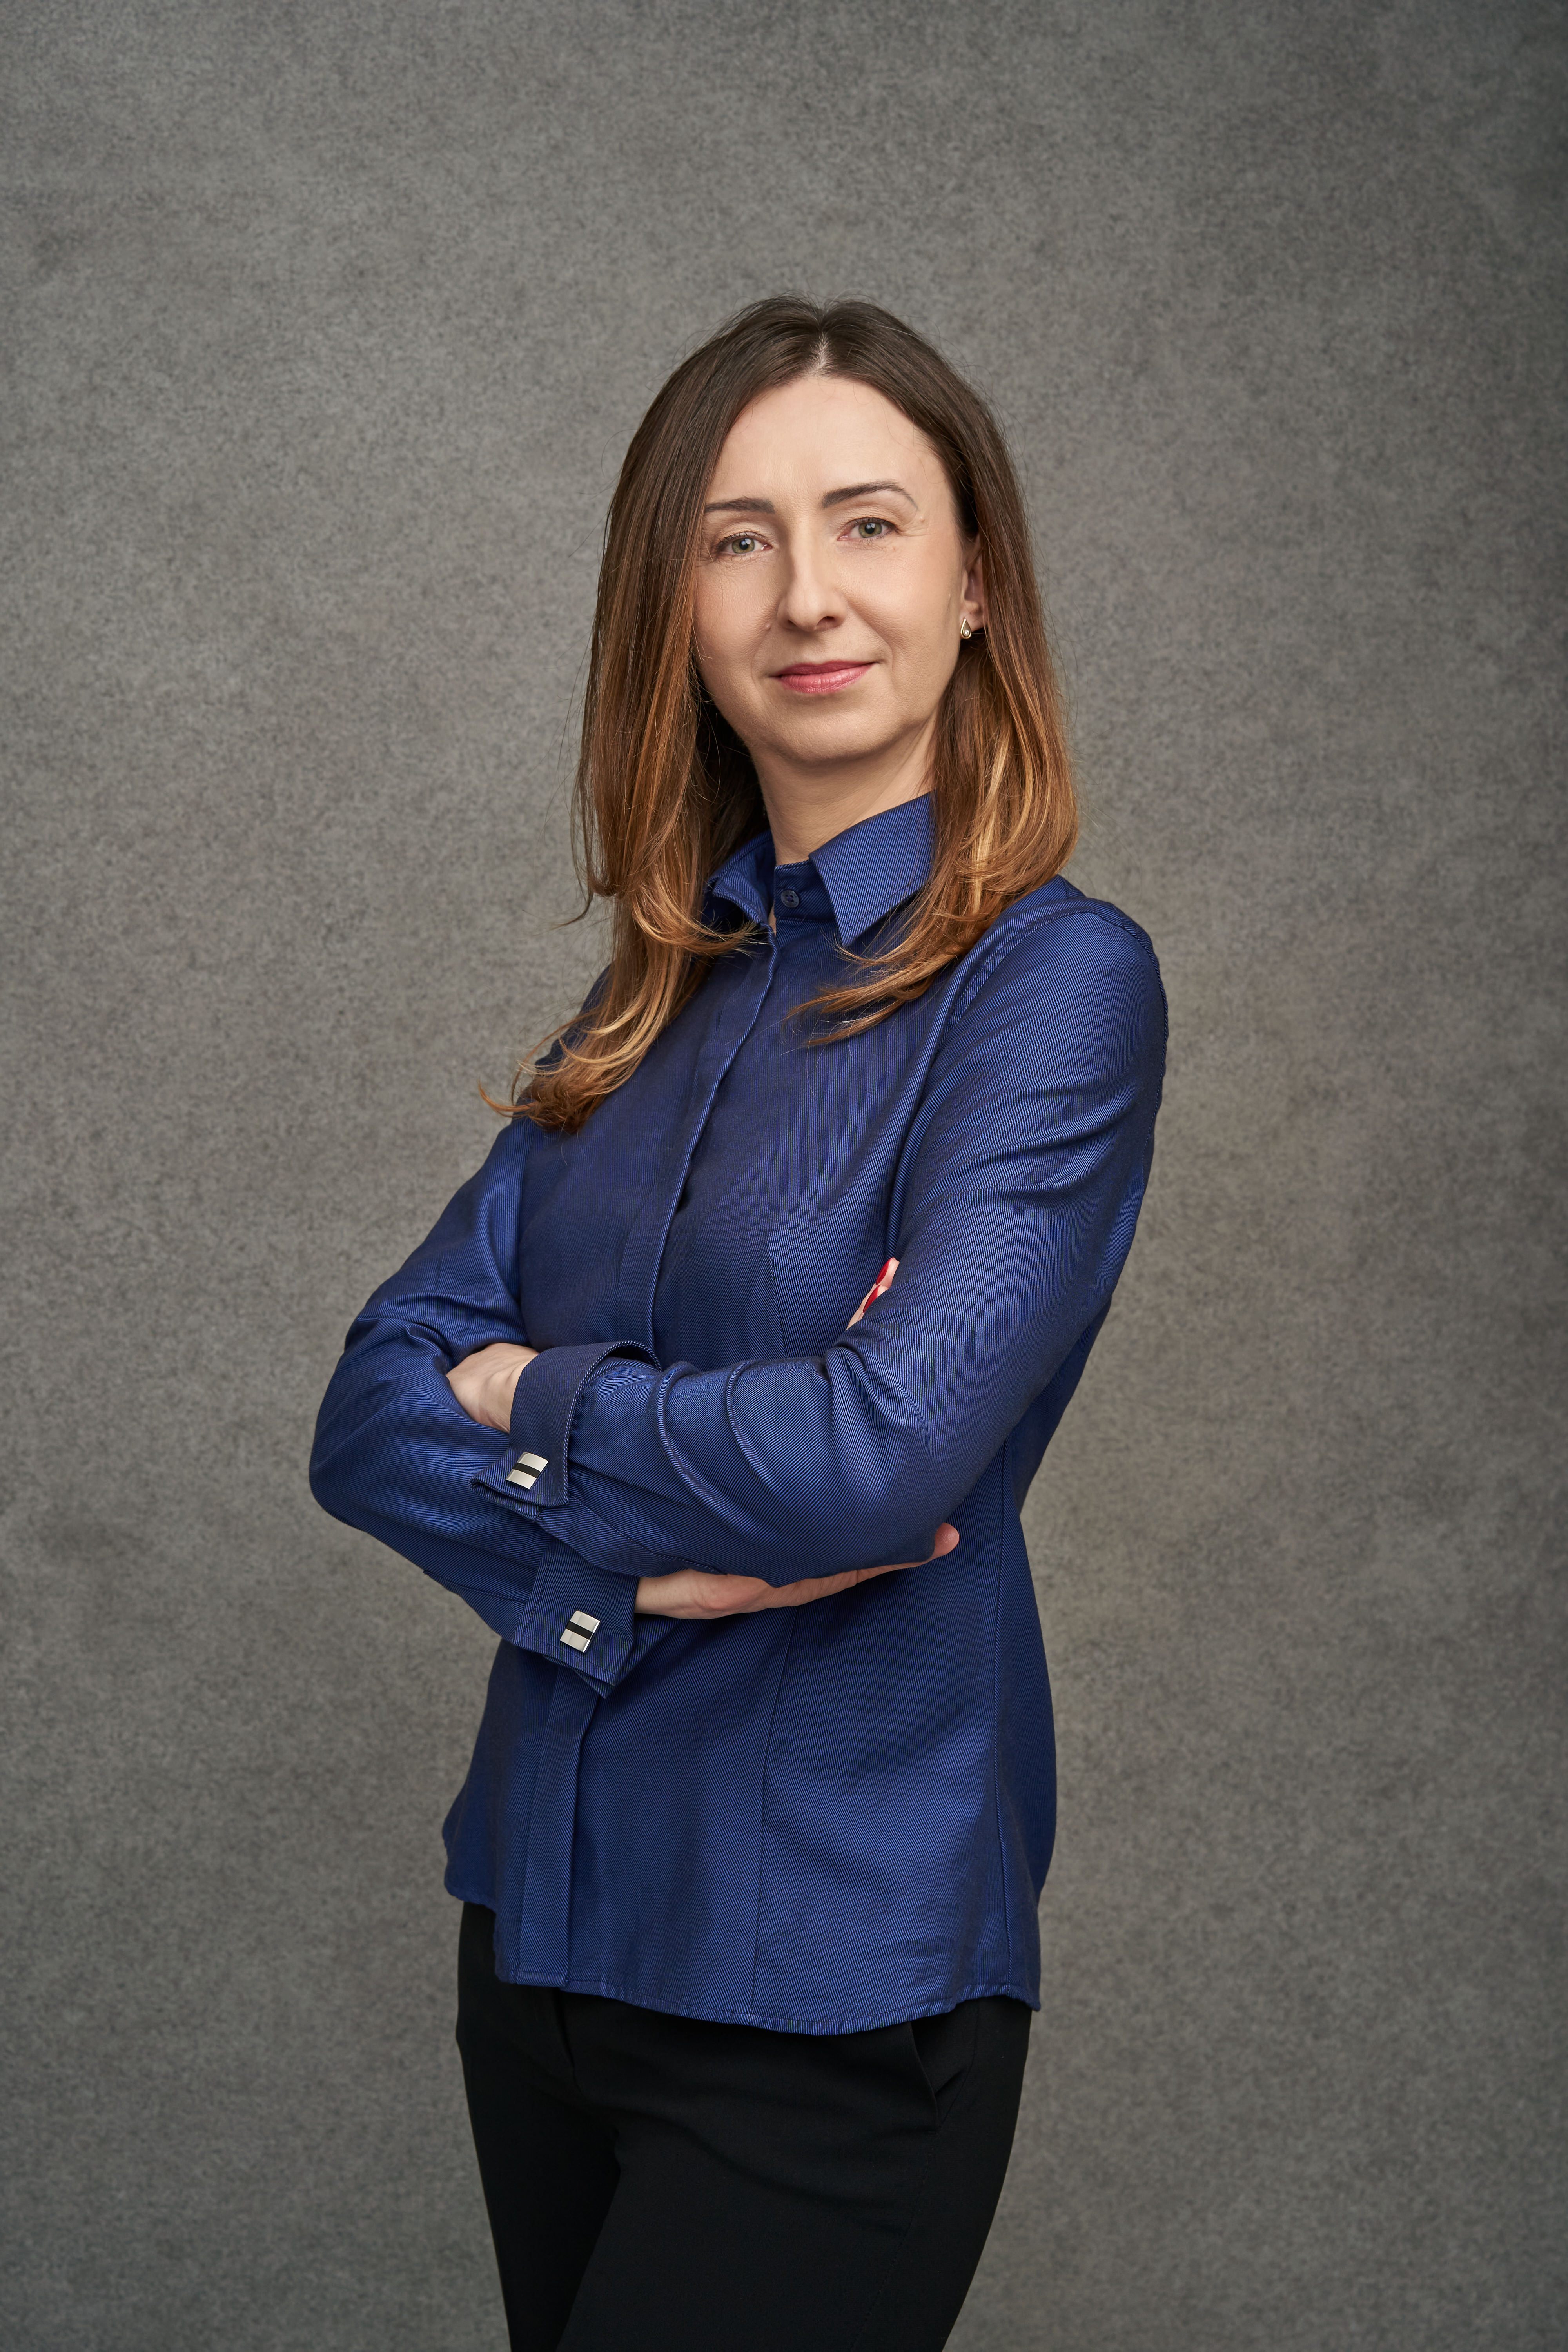 Ewa Dębska, Dyrektor ds. Opieki Ambulatoryjnej Centrum Medycznego Ujastek